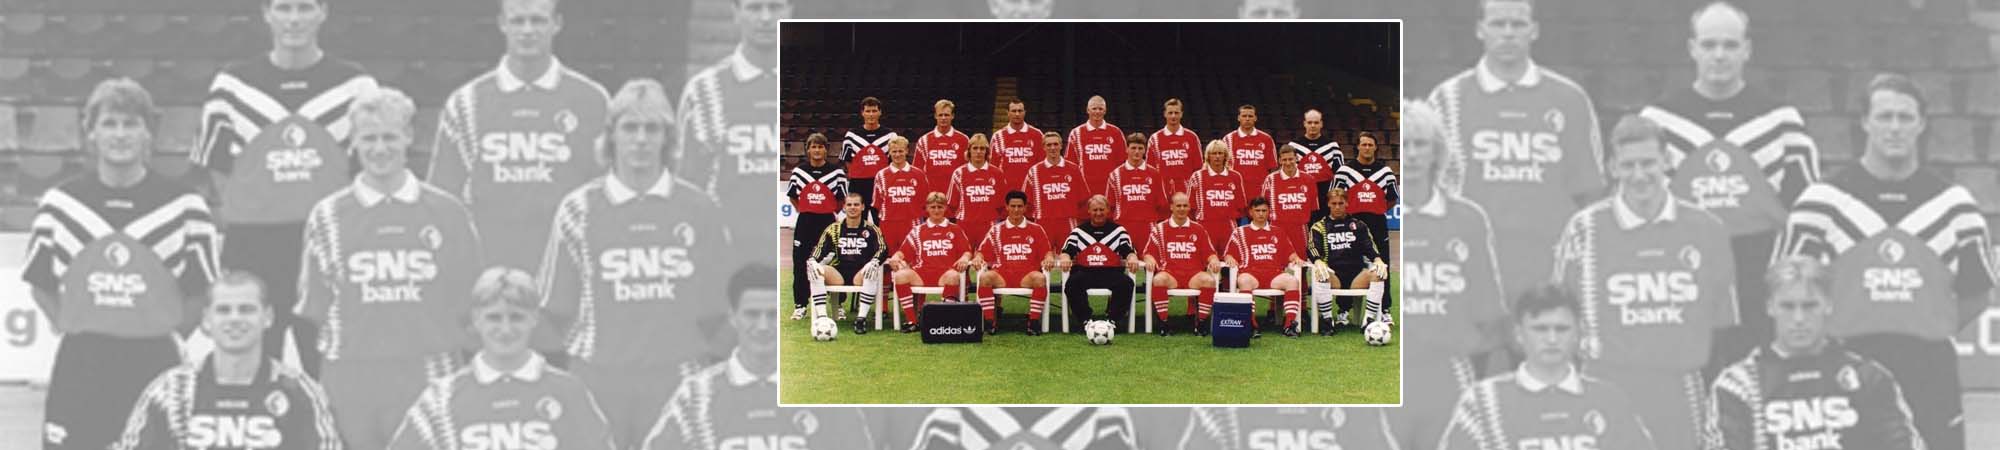 FC Twente seizoen 1995/1996